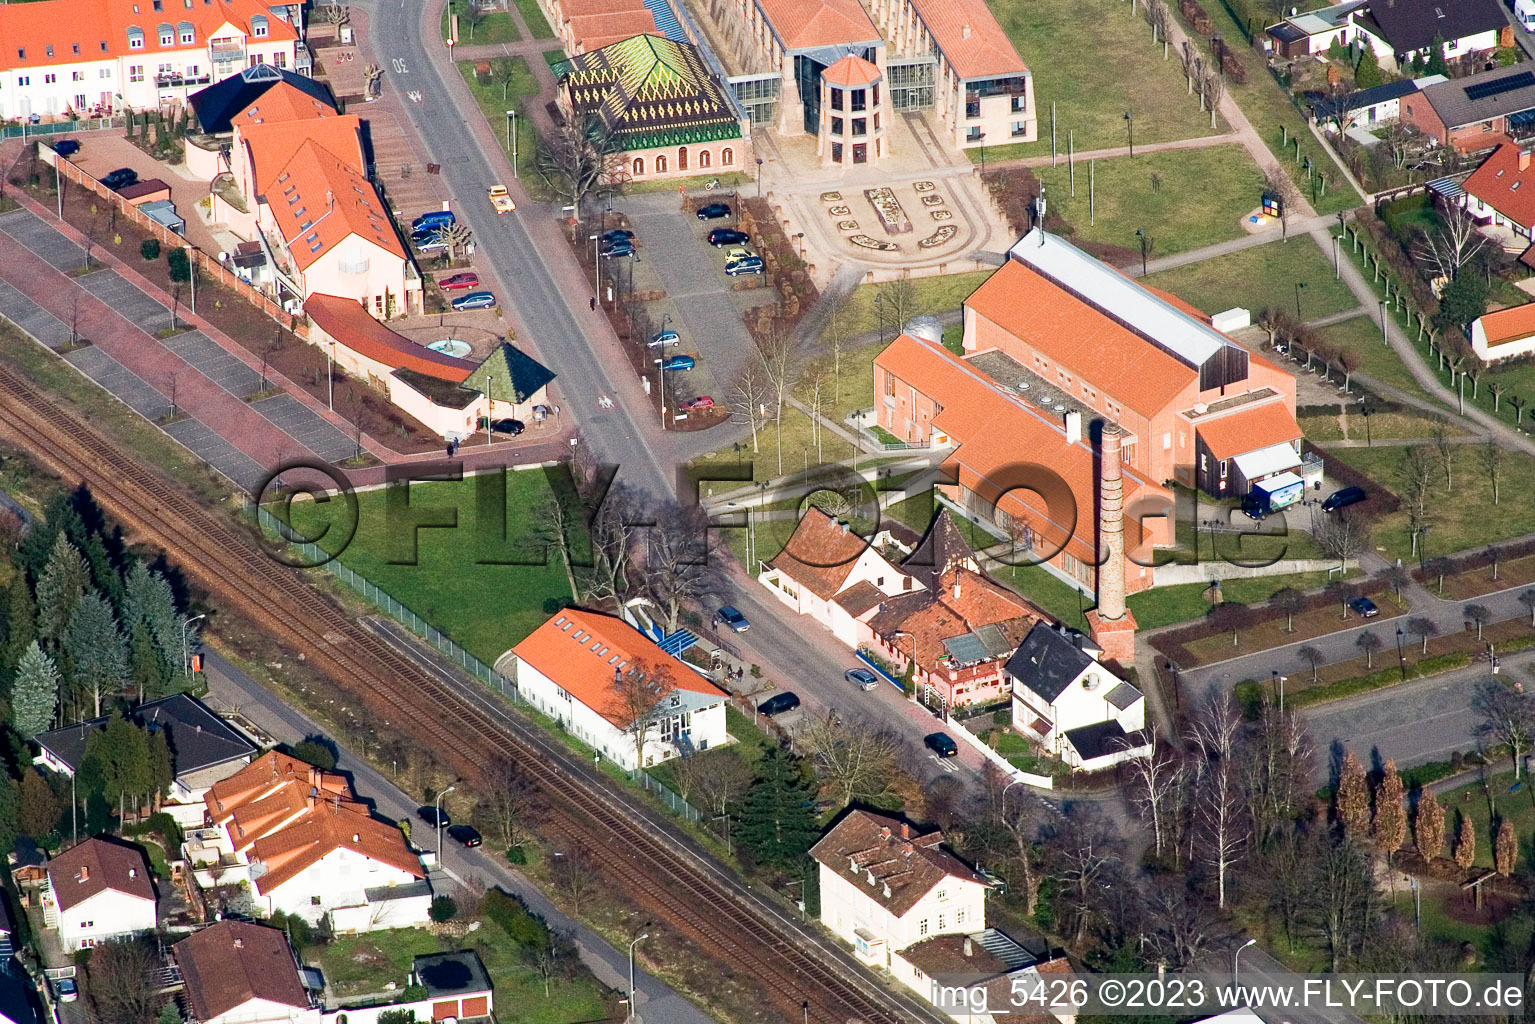 Vue aérienne de Salle des fêtes du sud-ouest à Jockgrim dans le département Rhénanie-Palatinat, Allemagne